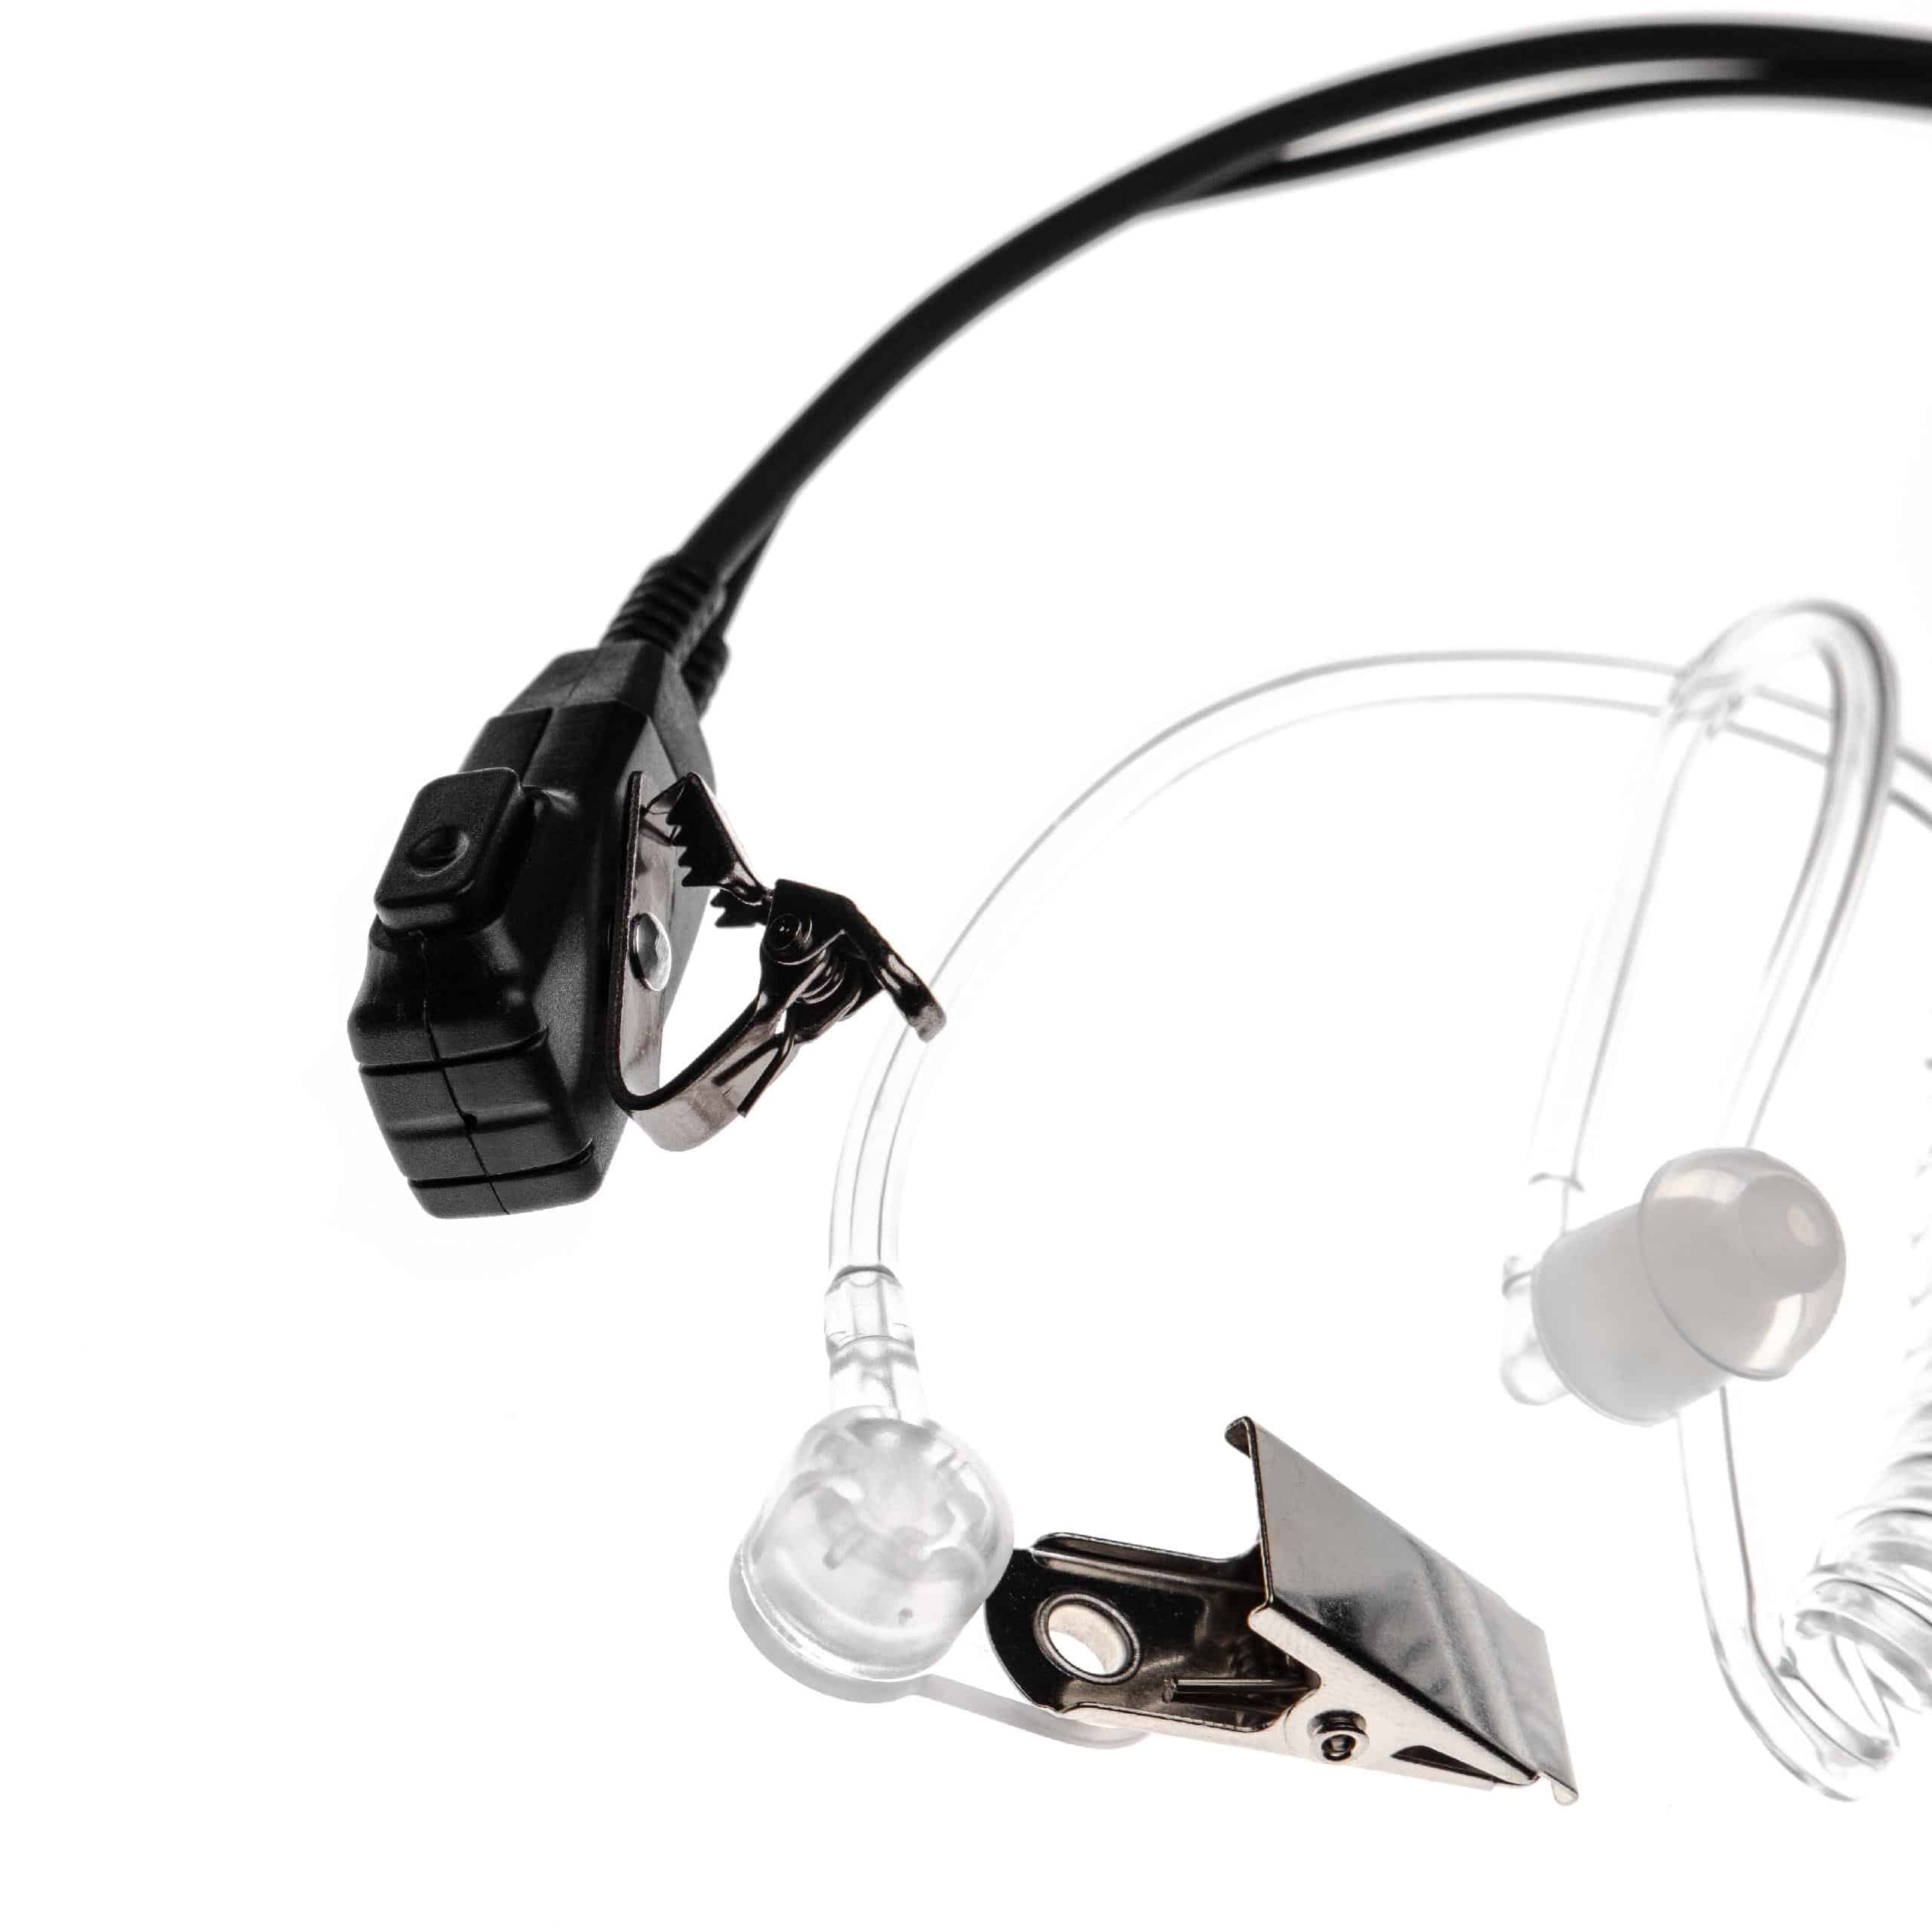 Security headset per ricetrasmittente Cobra PR240 - trasparente / nero + microfono push-to-talk + supporto a c